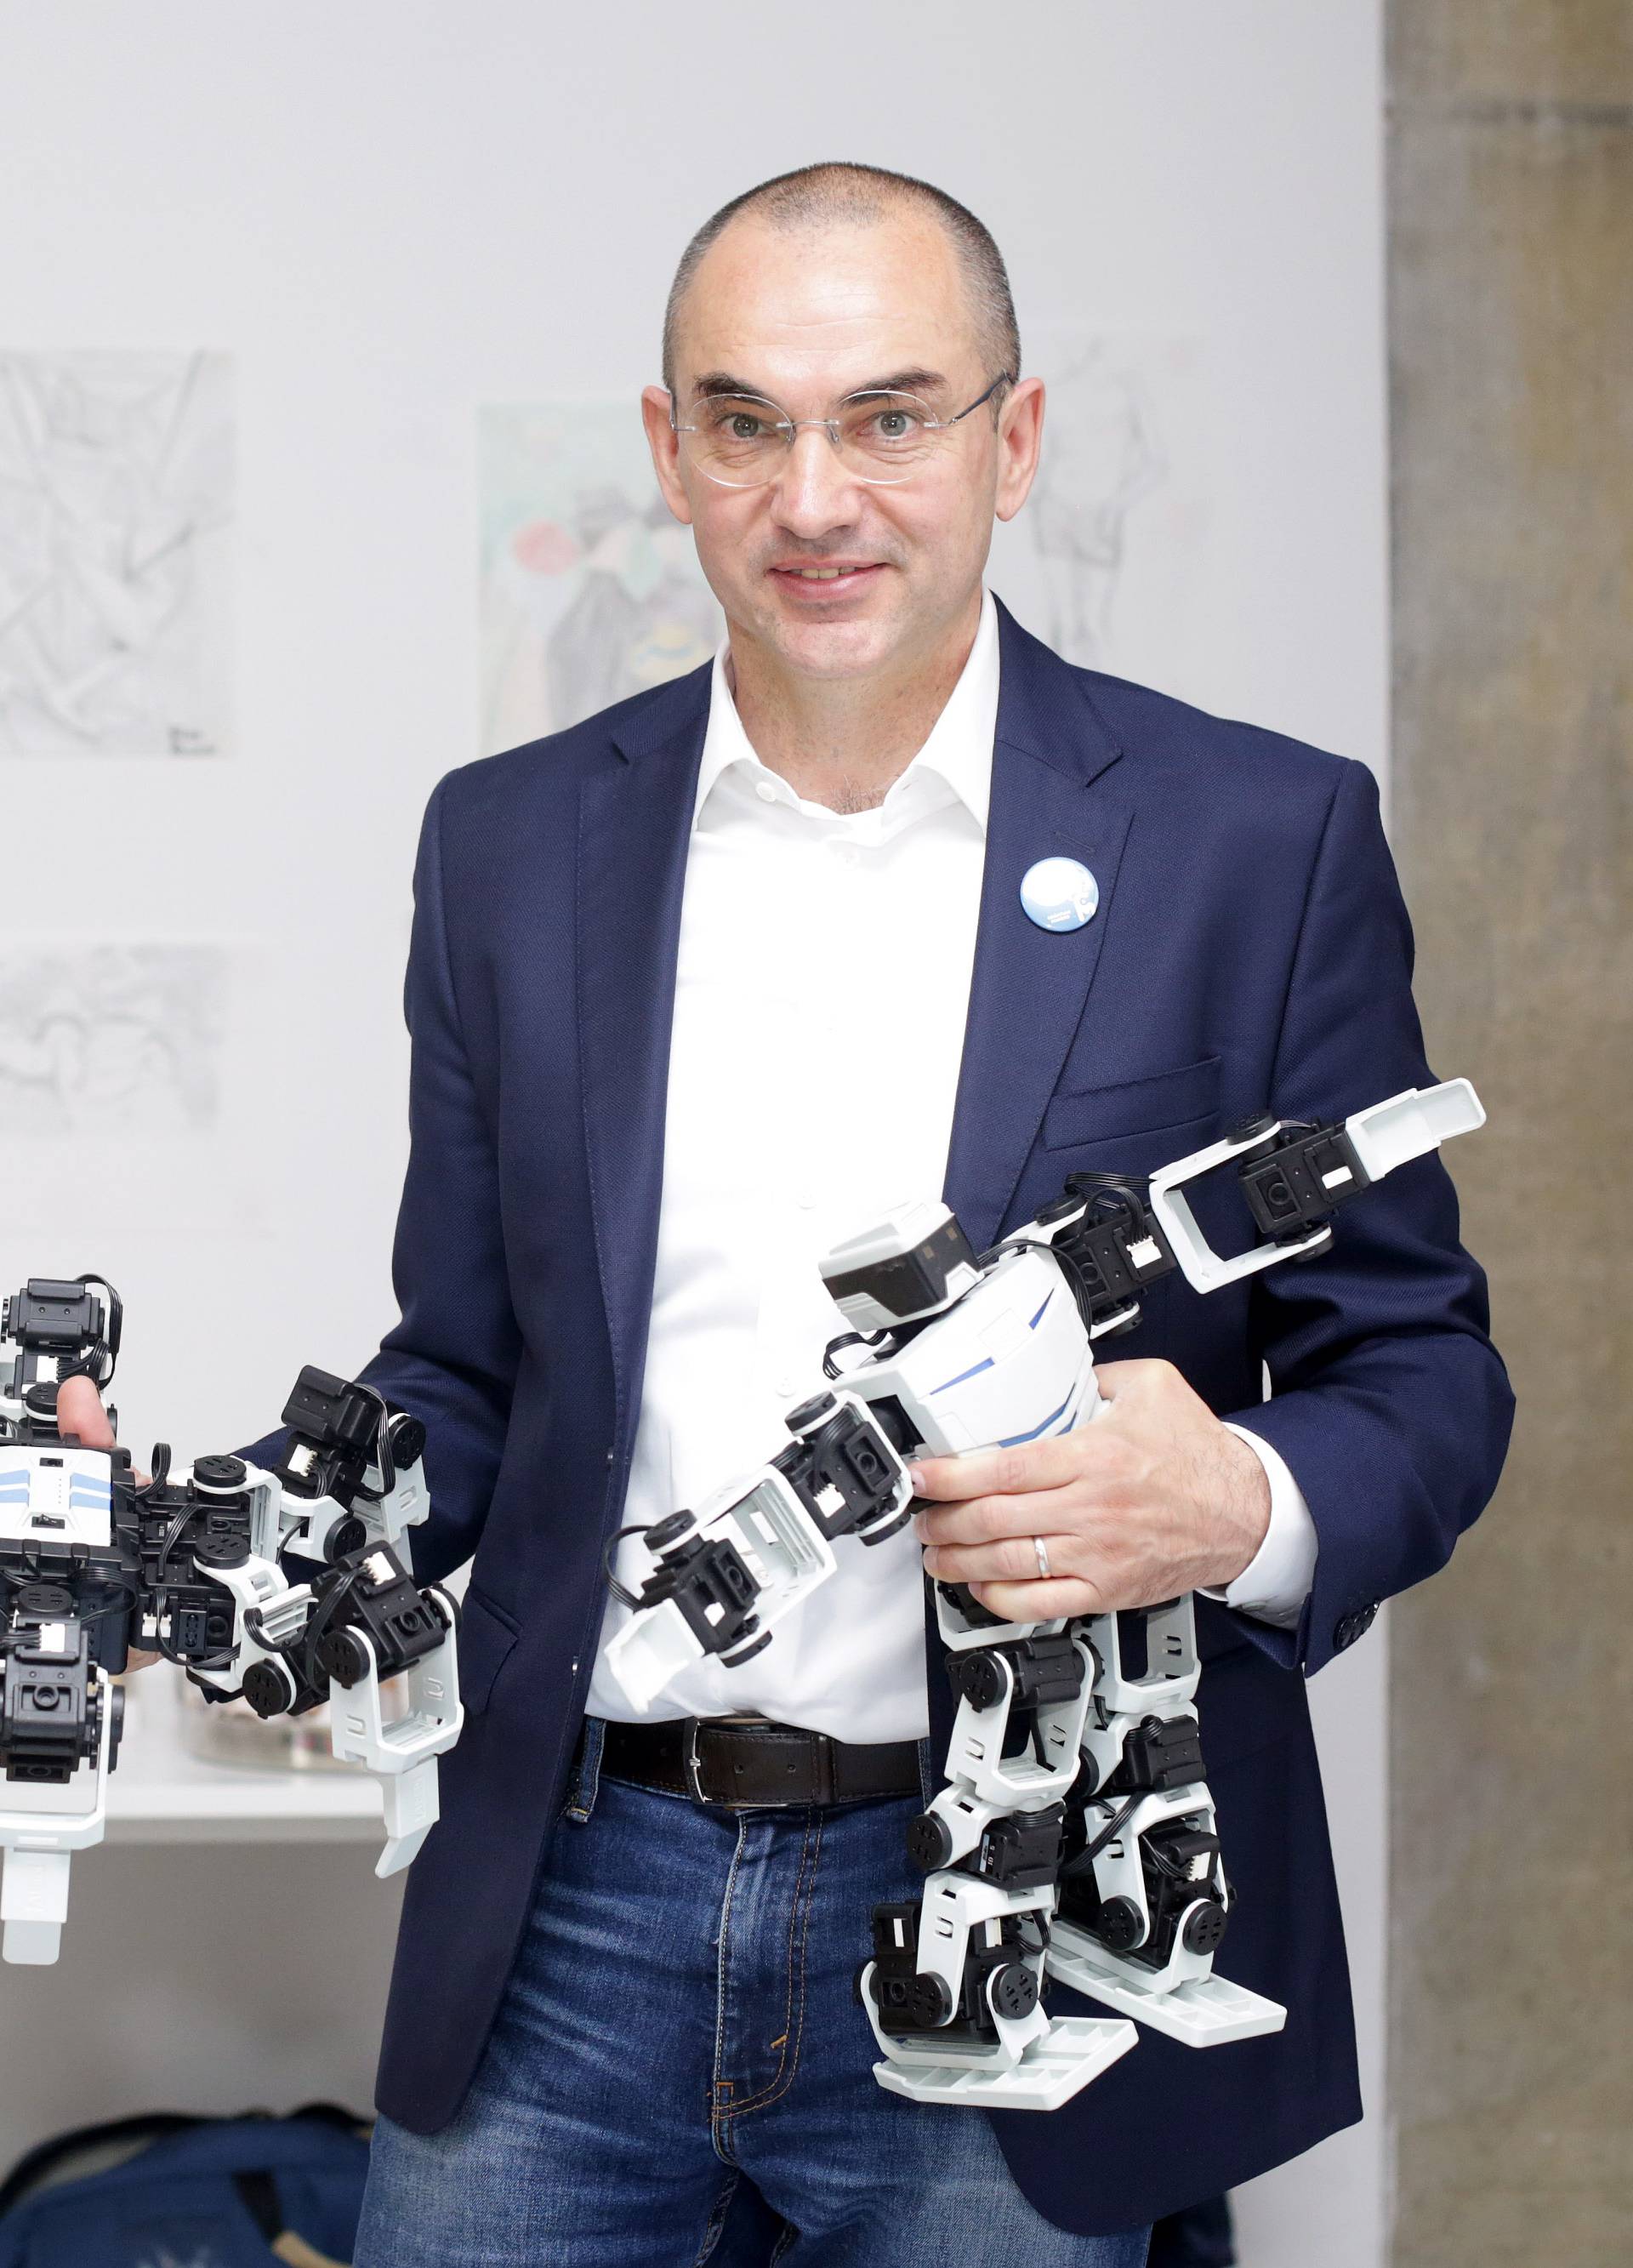 Kreće kup Hrvatske:  Đacima   nabavili 60 robotskih setova